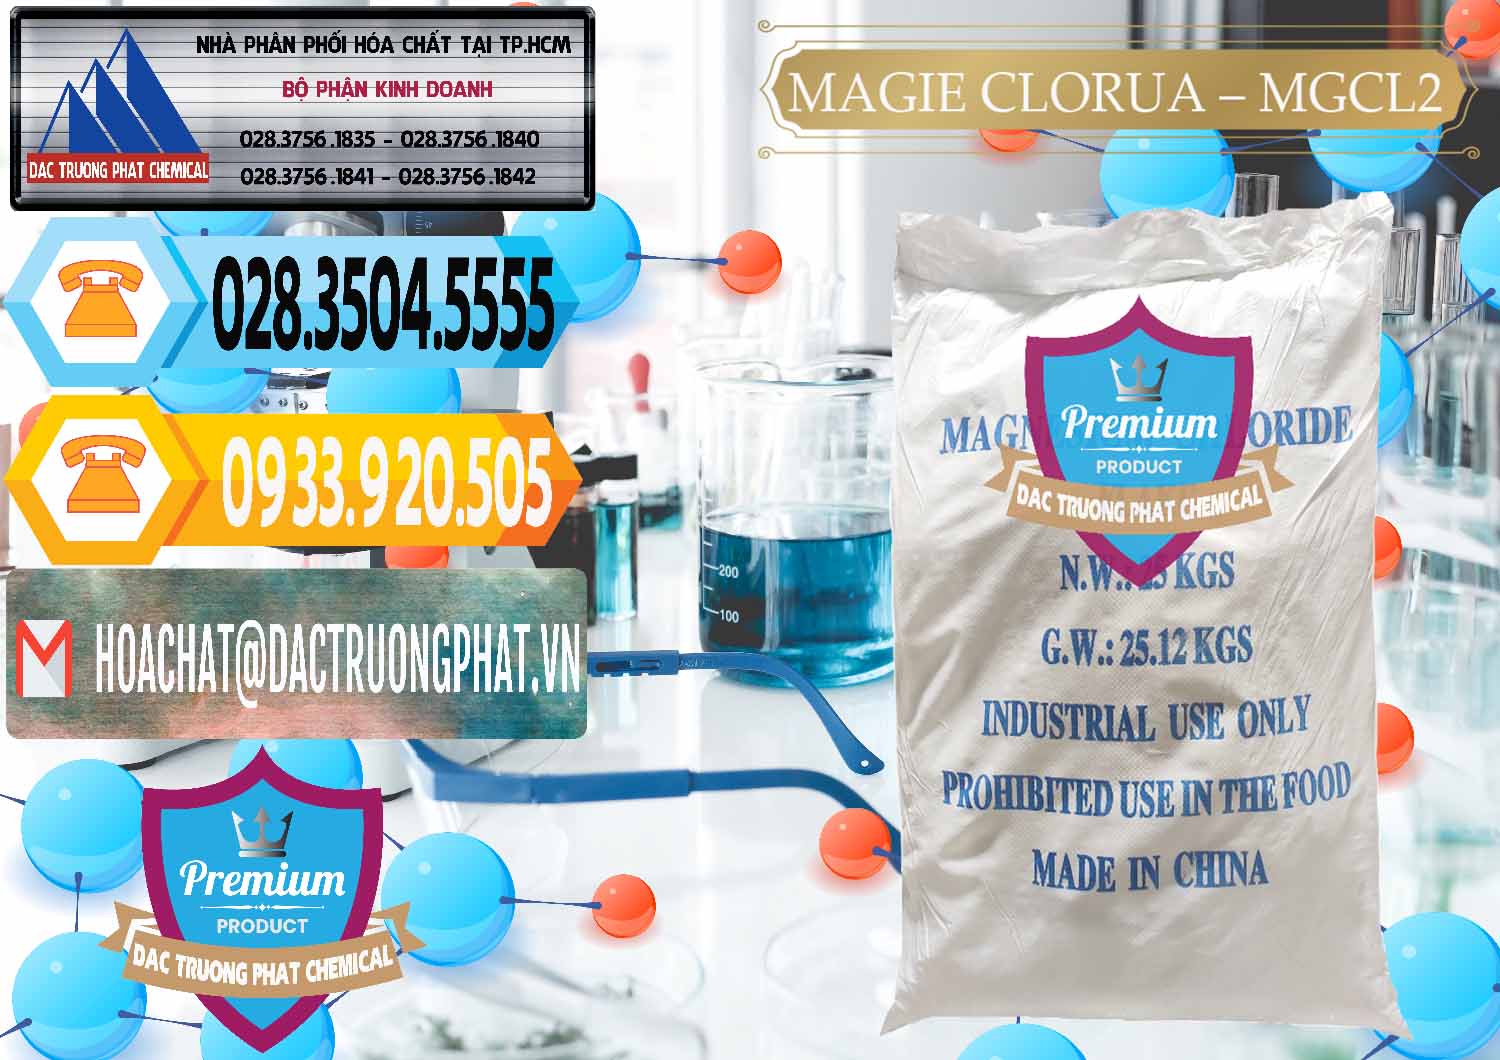 Công ty chuyên bán ( cung ứng ) Magie Clorua – MGCL2 96% Dạng Vảy Trung Quốc China - 0091 - Đơn vị cung ứng ( phân phối ) hóa chất tại TP.HCM - hoachattayrua.net